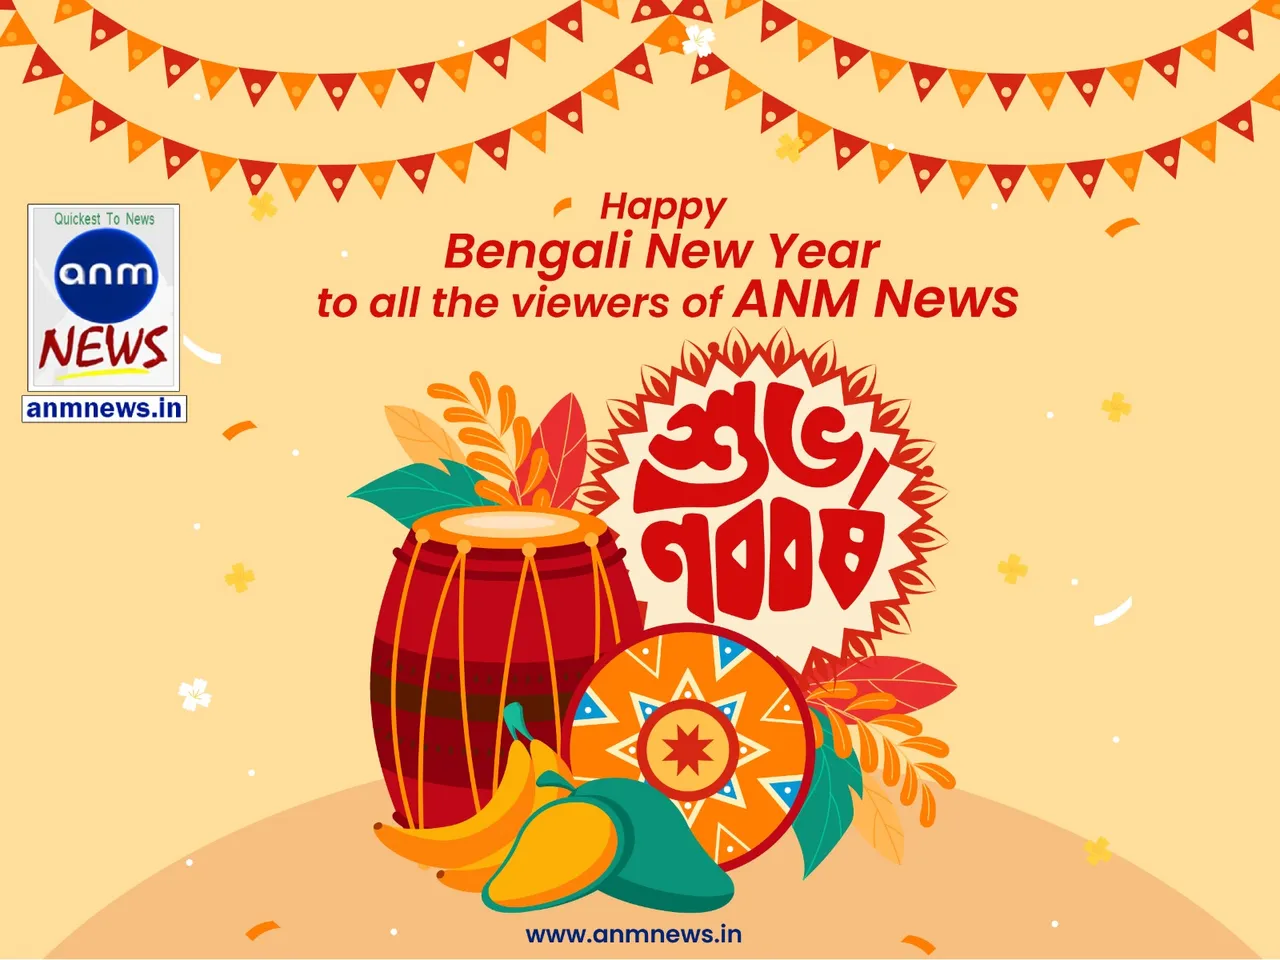 Happy Bengali New Year!